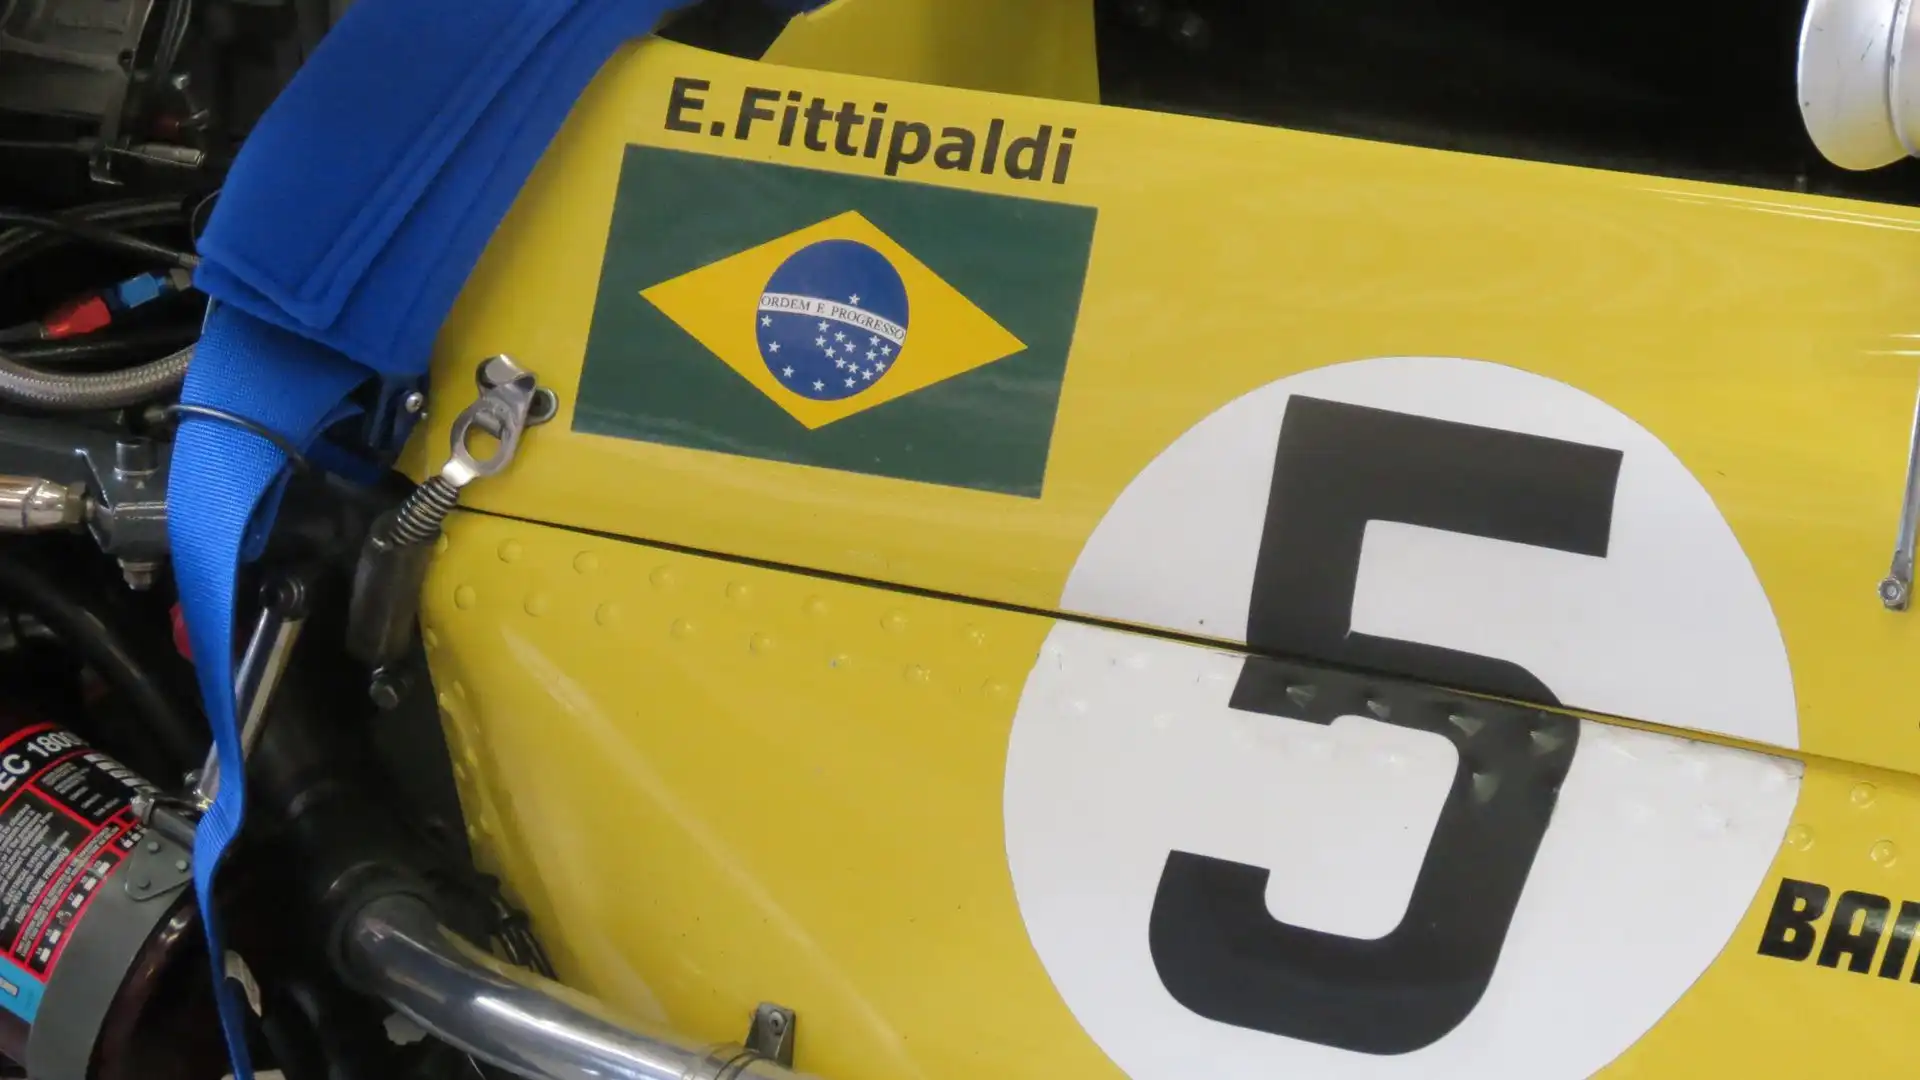 Il giallo della Lotus di Emerson Fittipaldi brilla ancora in pista (foto Moreno Galimberti)